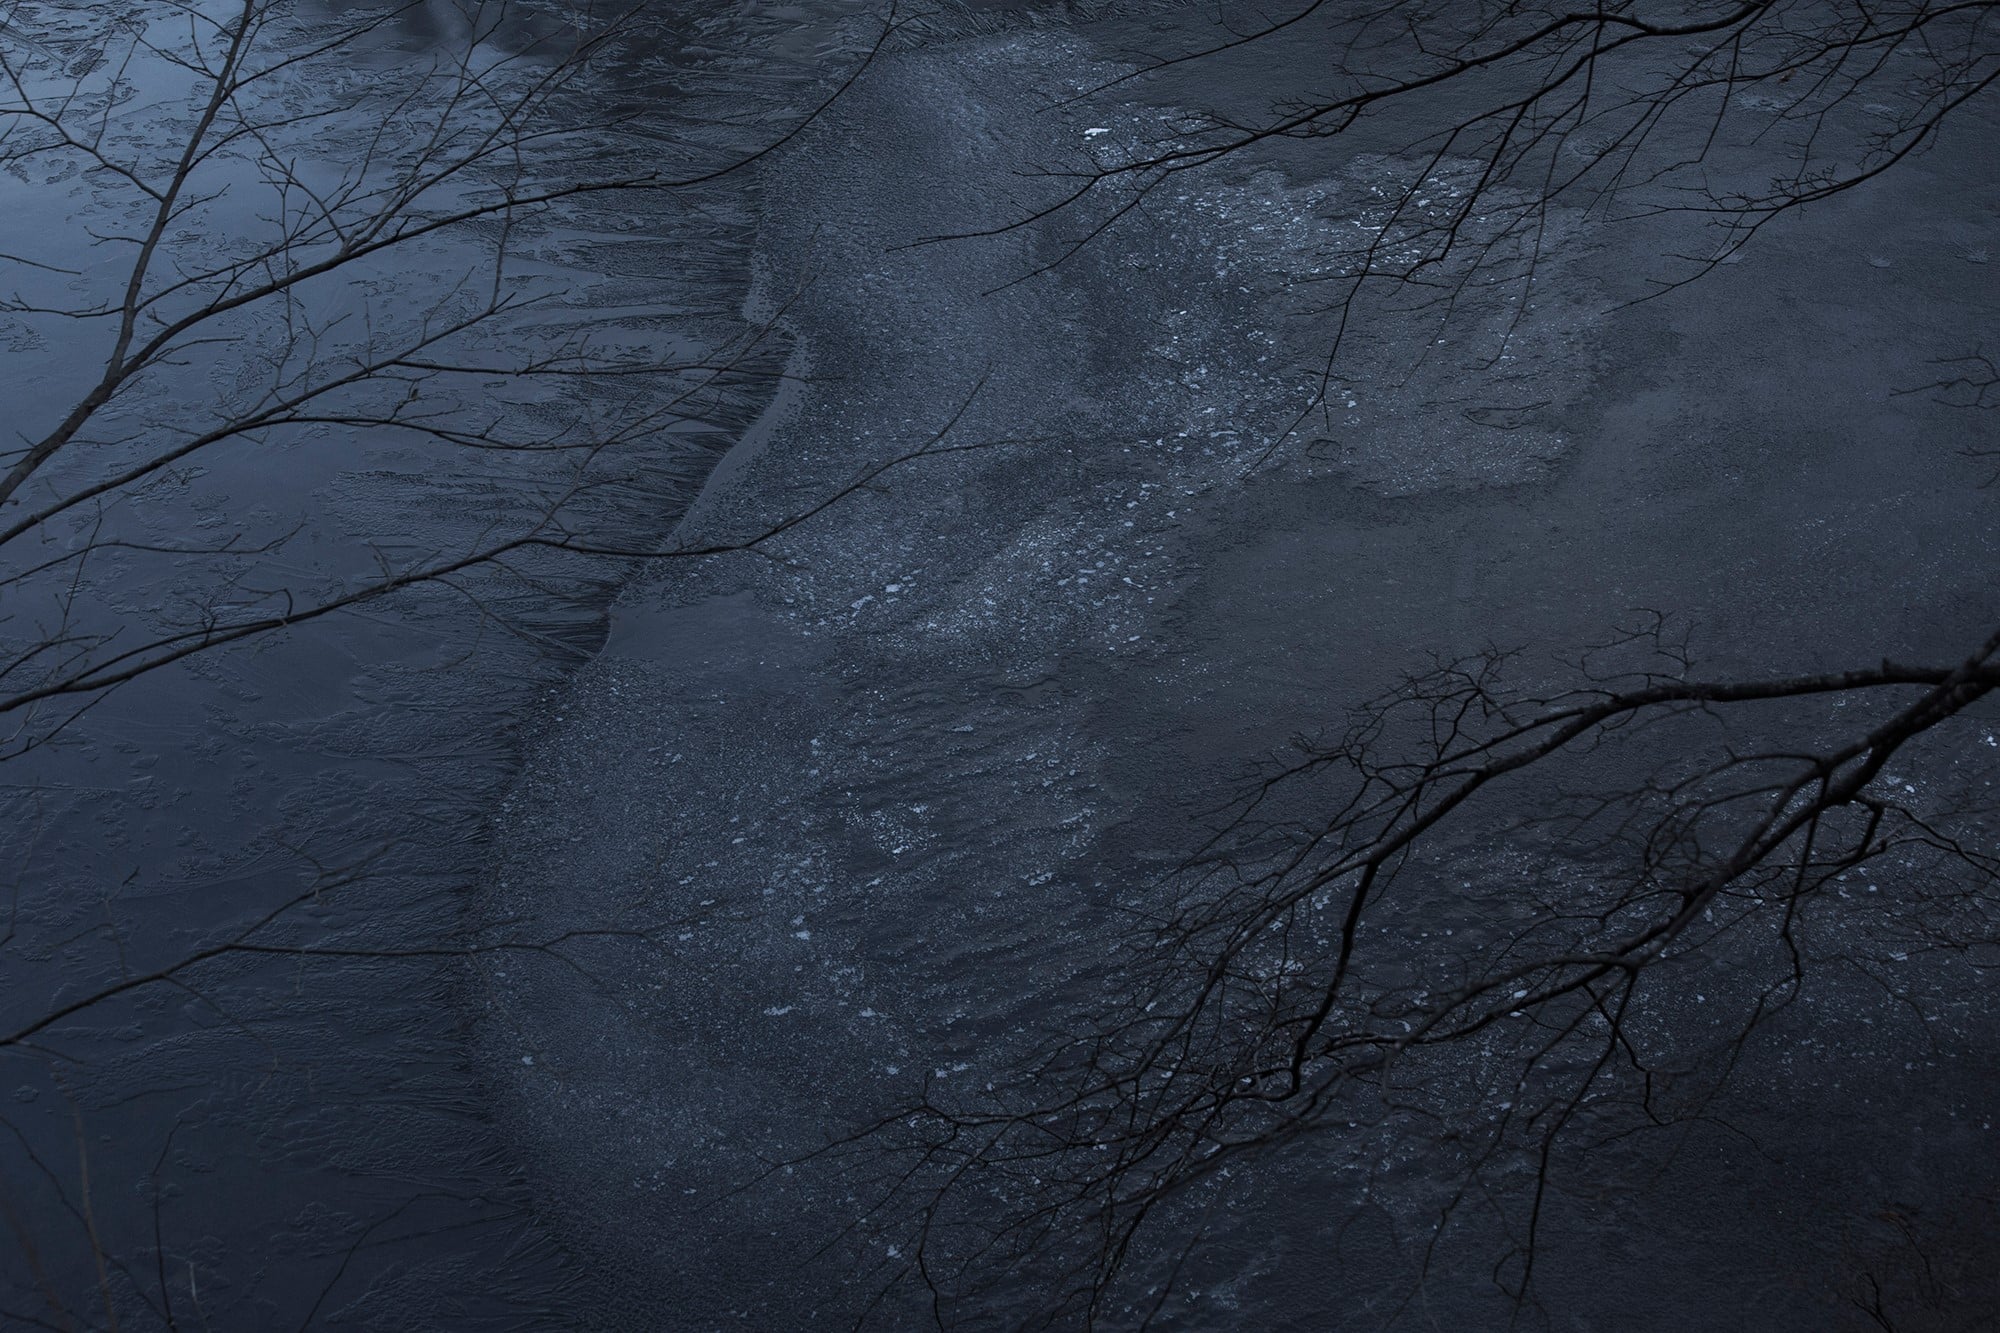 近くの池に氷が張ってきた。季節の気配には些細なことで気づく。